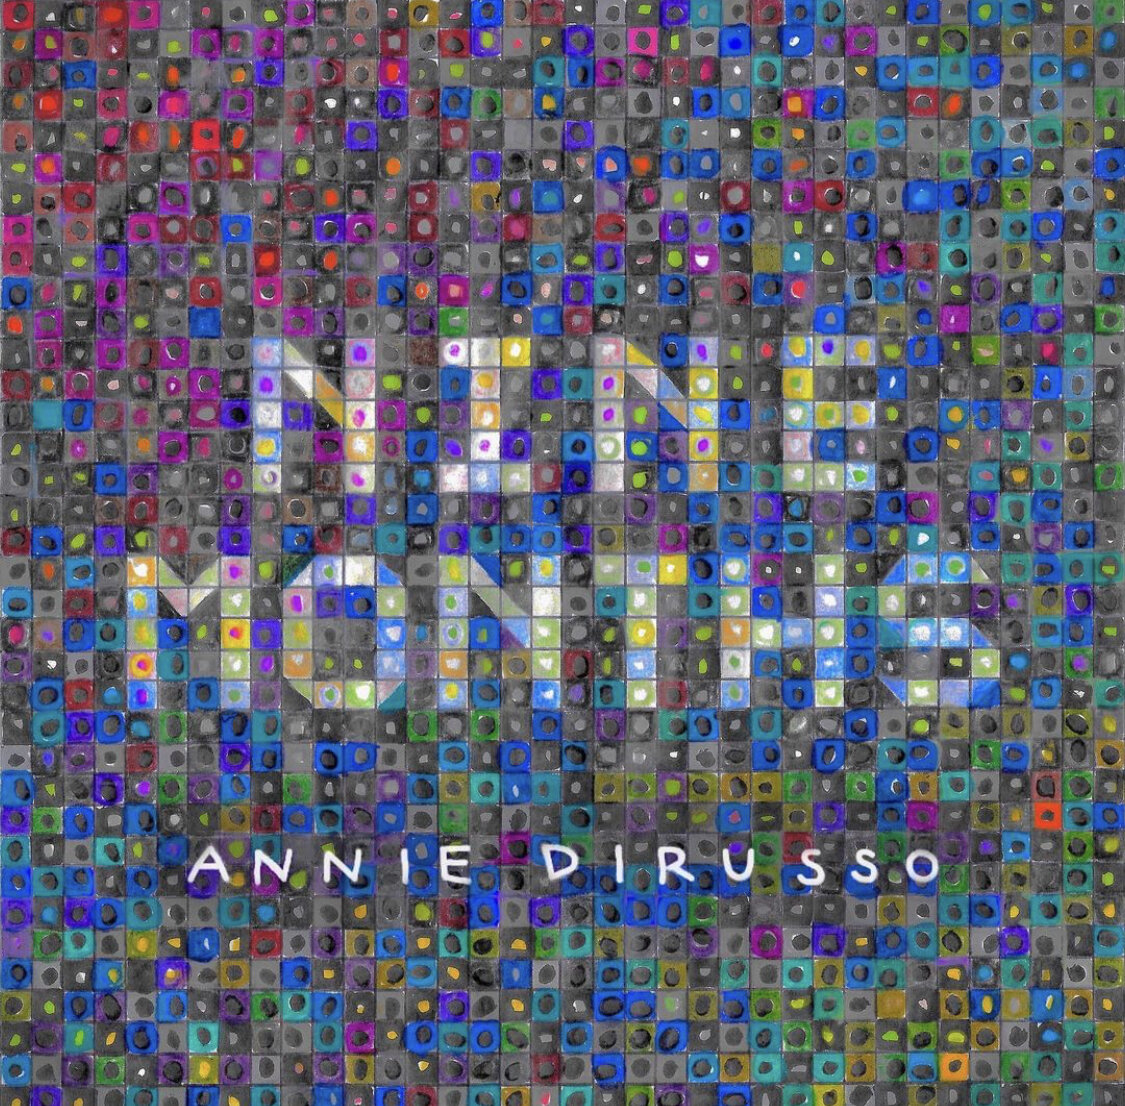 Nine months